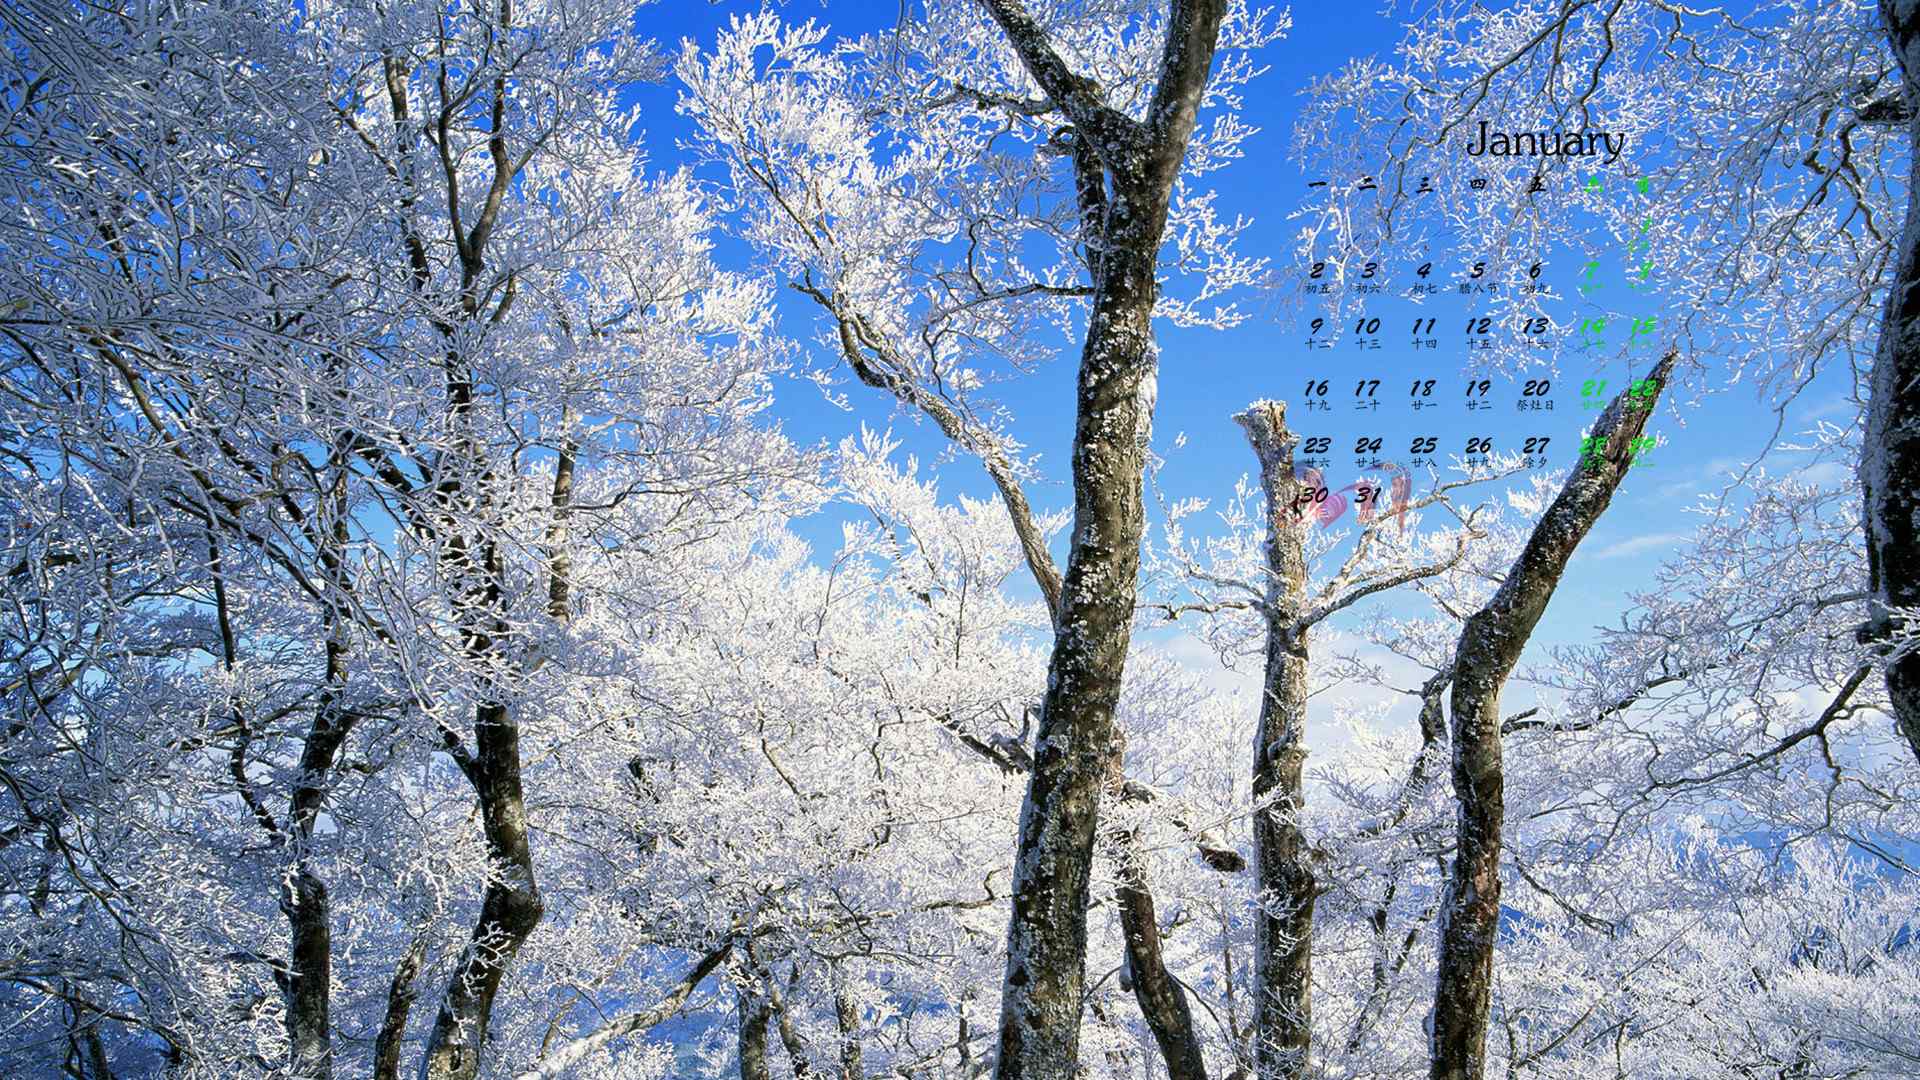 2017年1月日历唯美雪景高清桌面壁纸